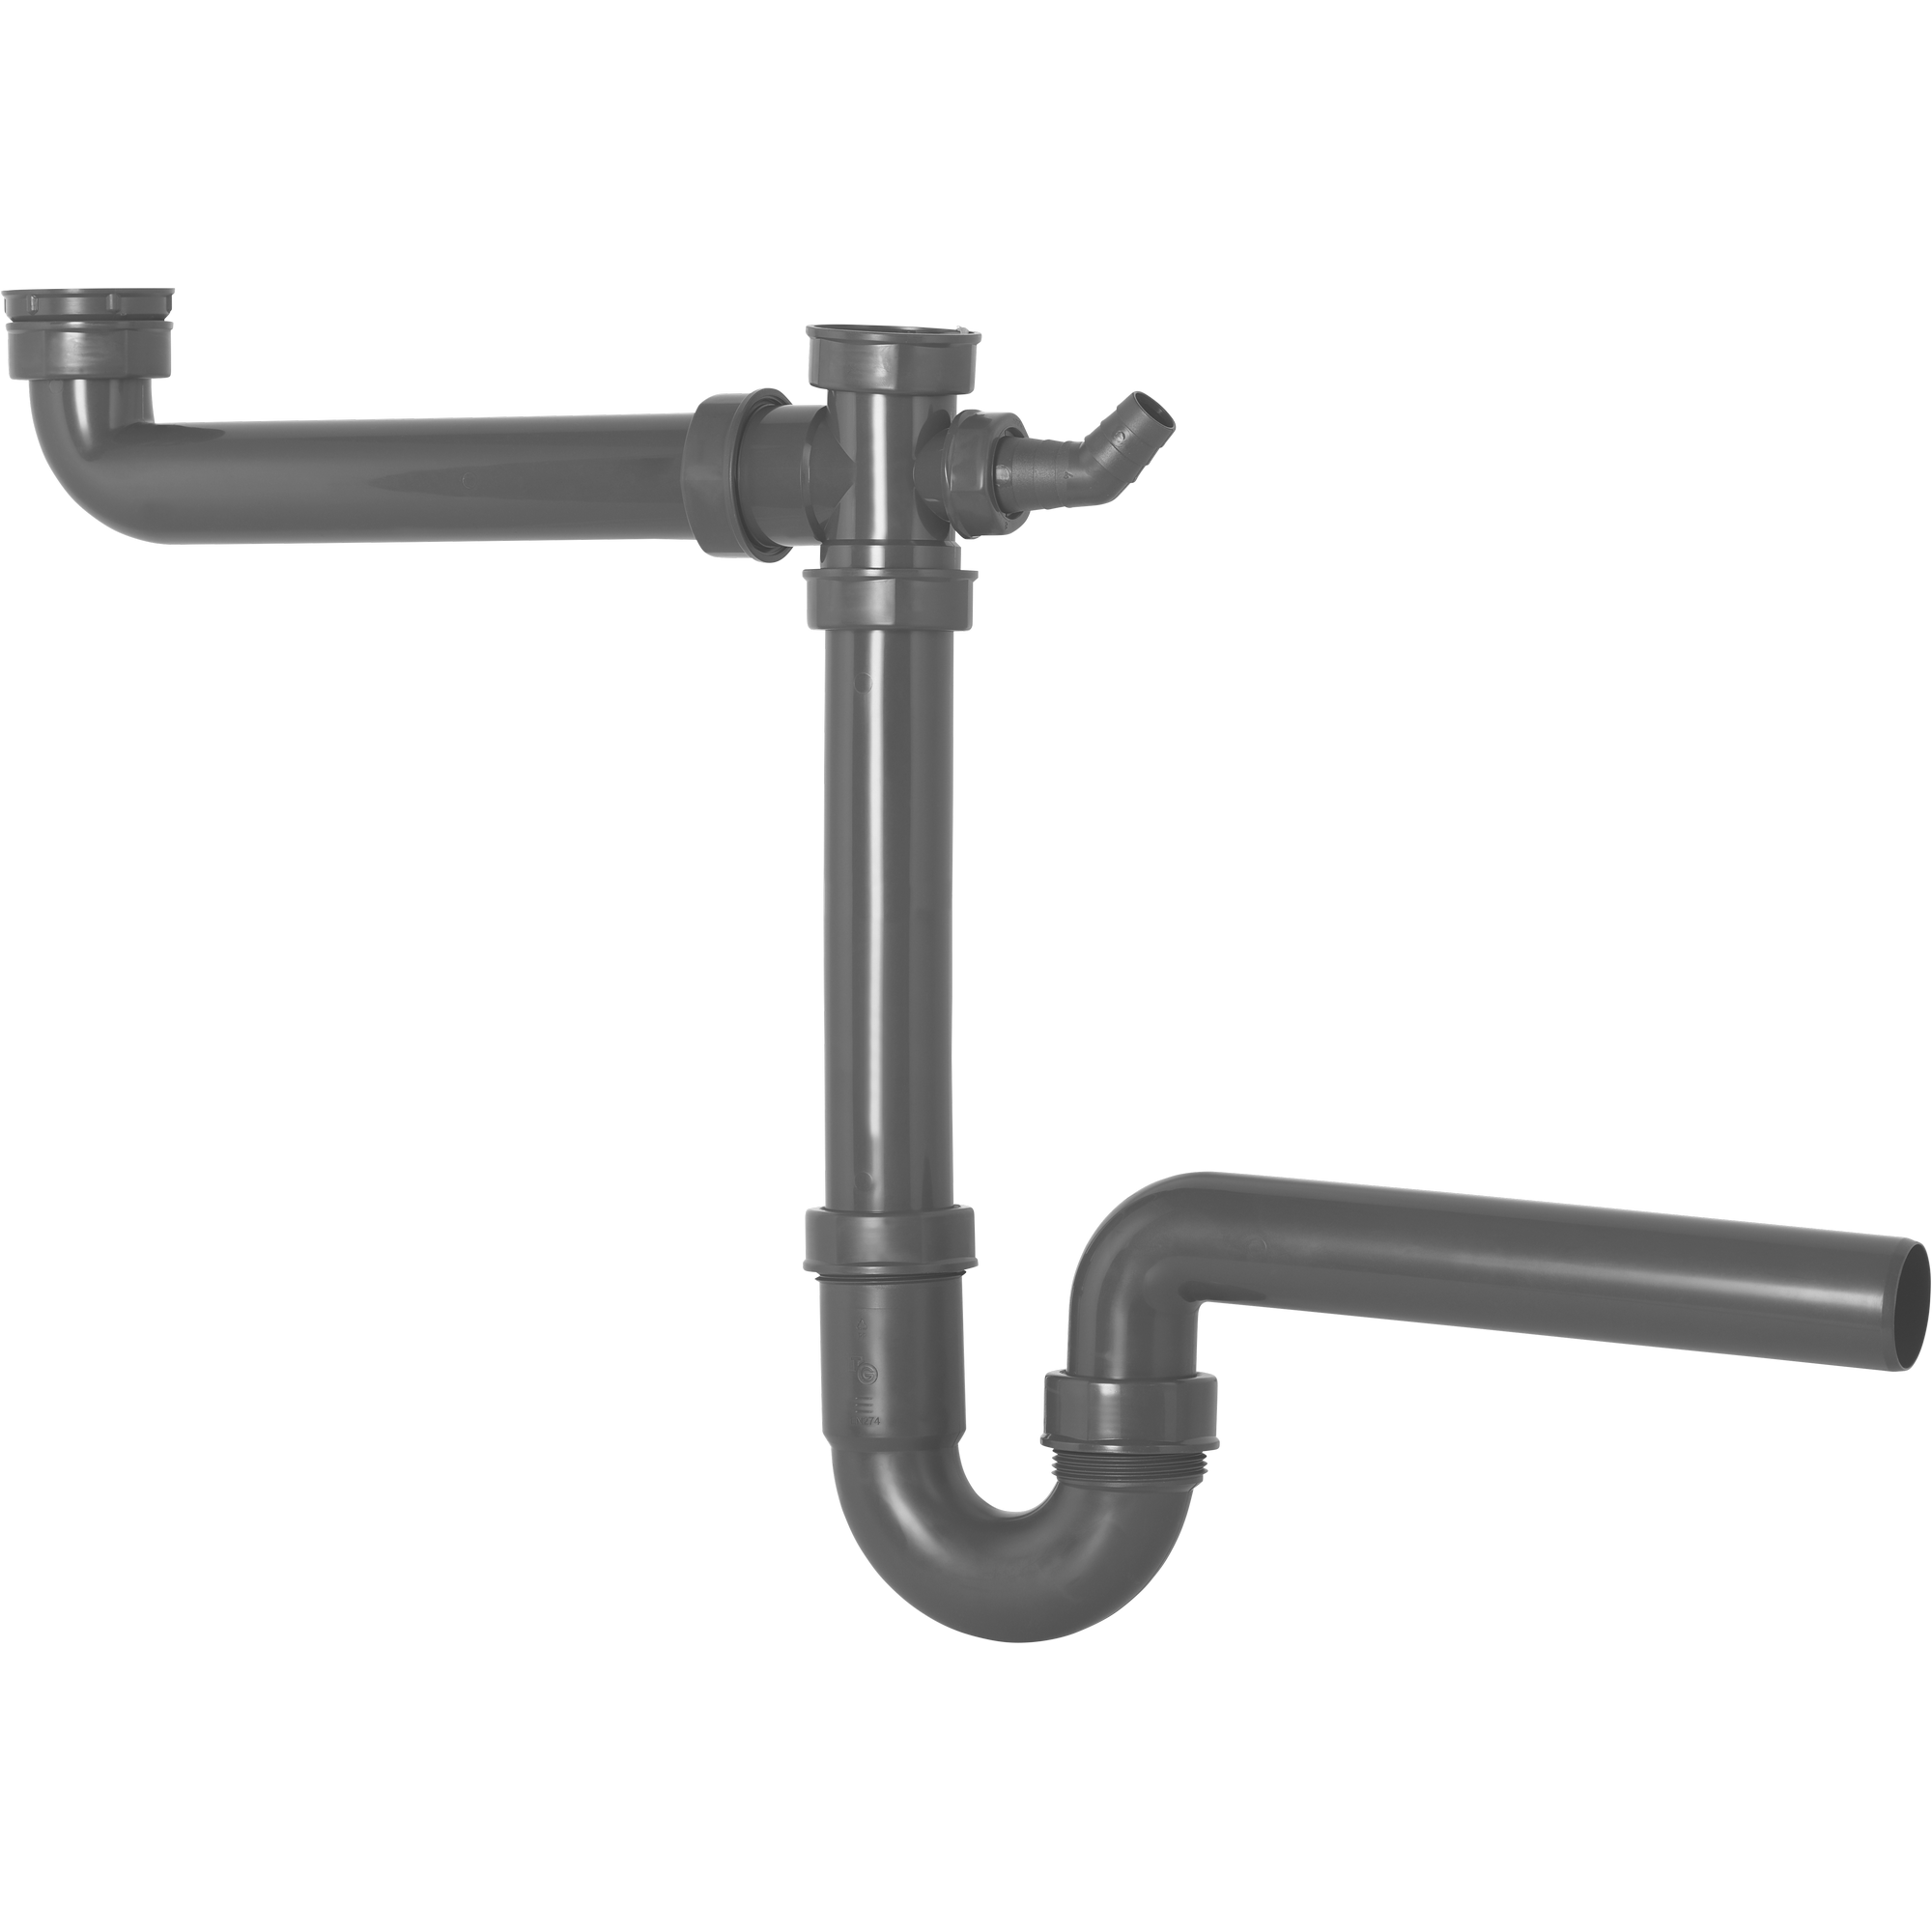 Spültisch-Röhrengeruchsverschluss mit Höhenausgleichstück, 1 1/2" x Ø 40 mm + product picture